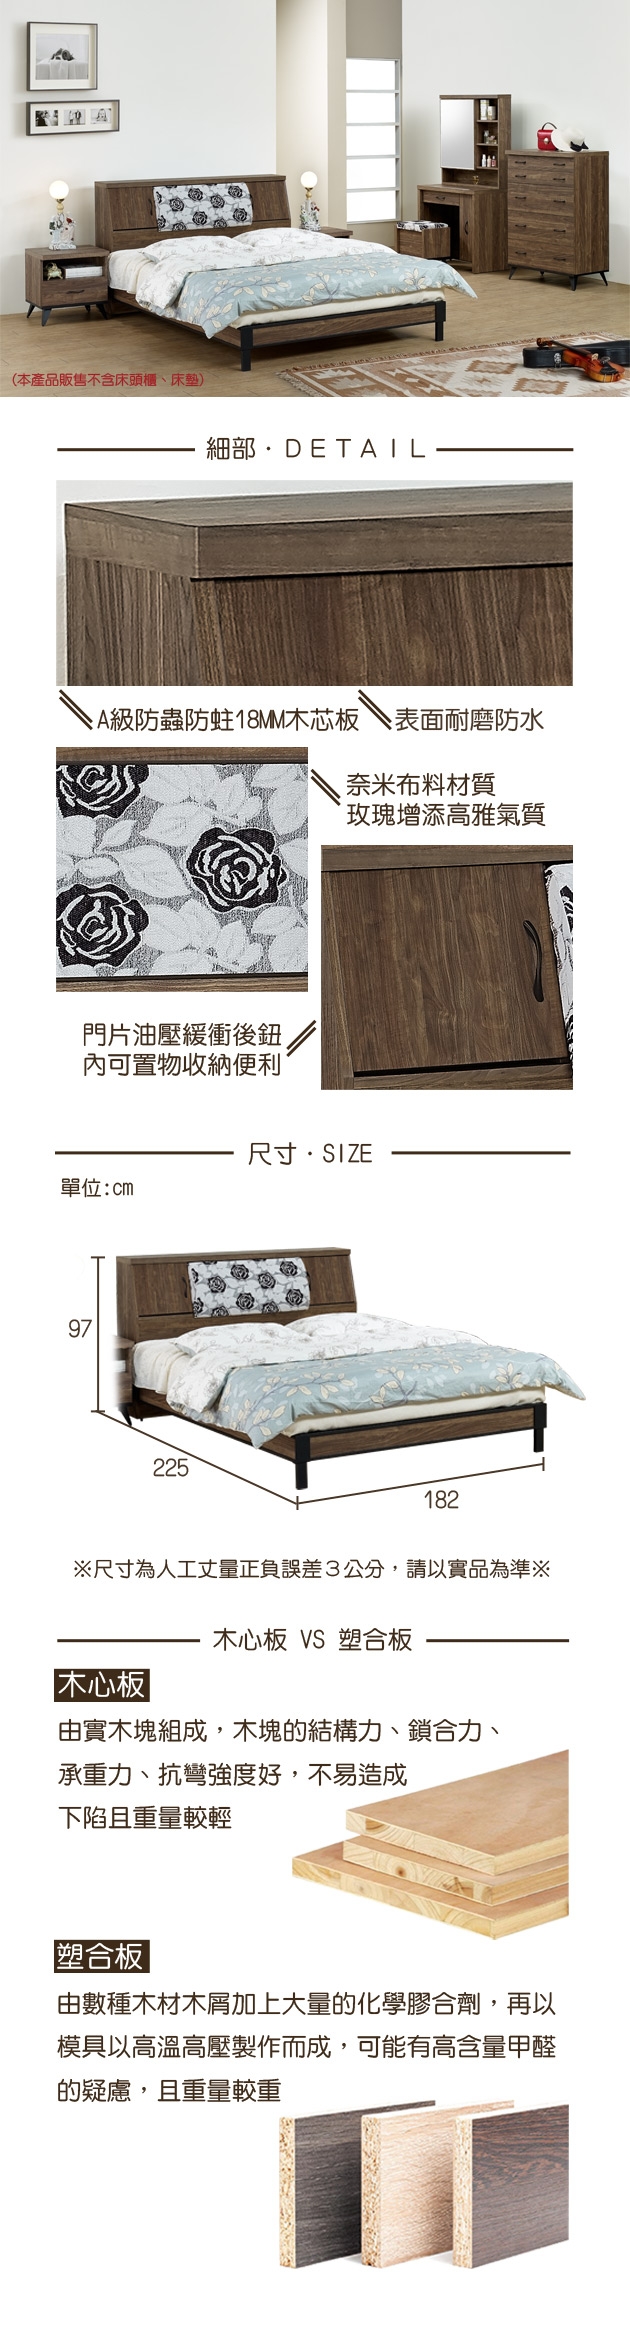 時尚屋班特胡桃色床箱型6尺加大雙人床(不含床頭櫃-床墊)